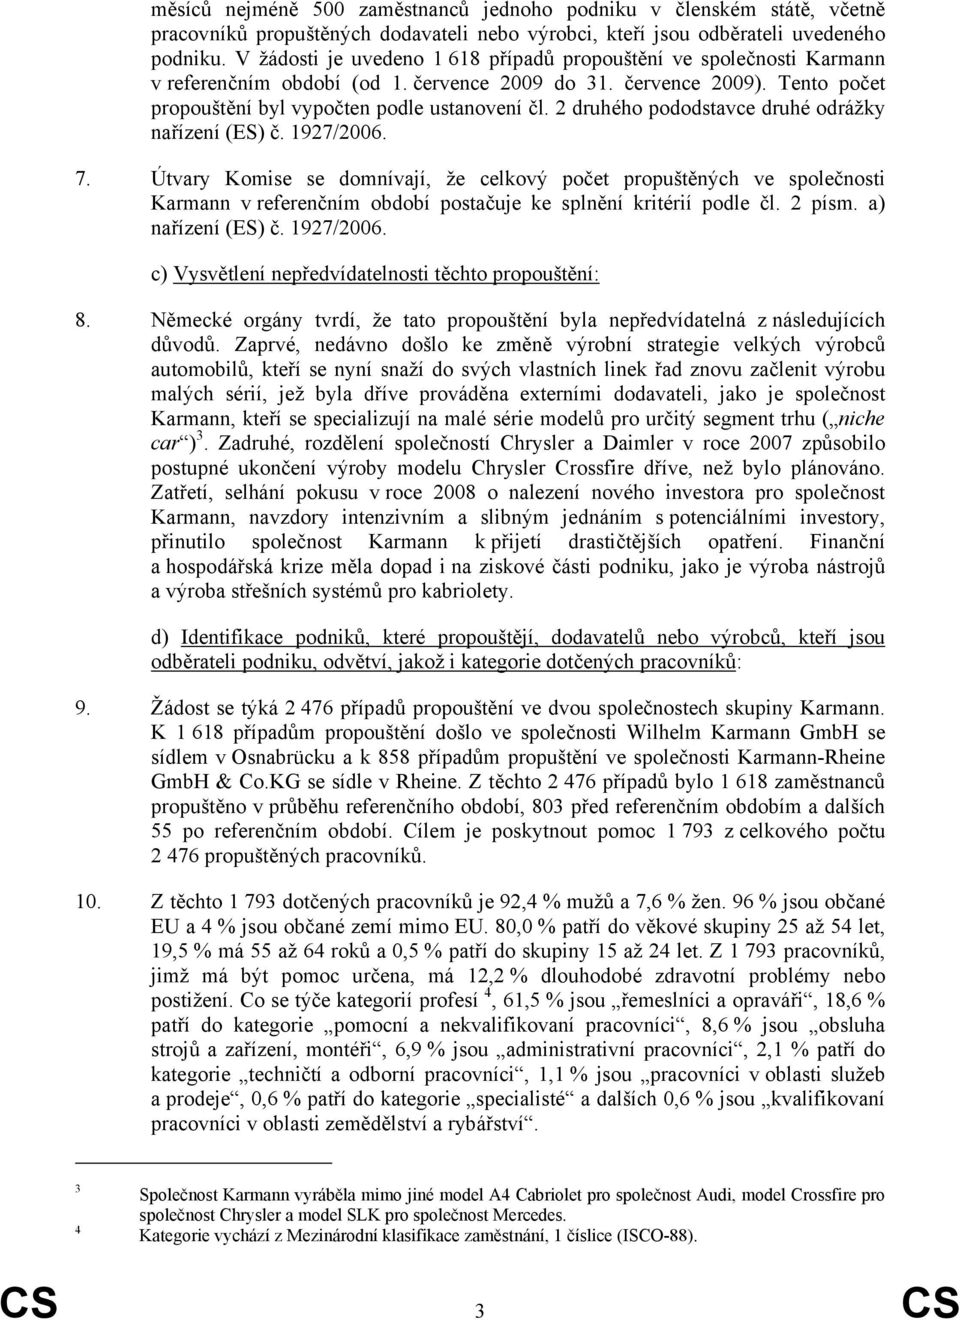 2 druhého pododstavce druhé odrážky nařízení (ES) č. 1927/2006. 7.